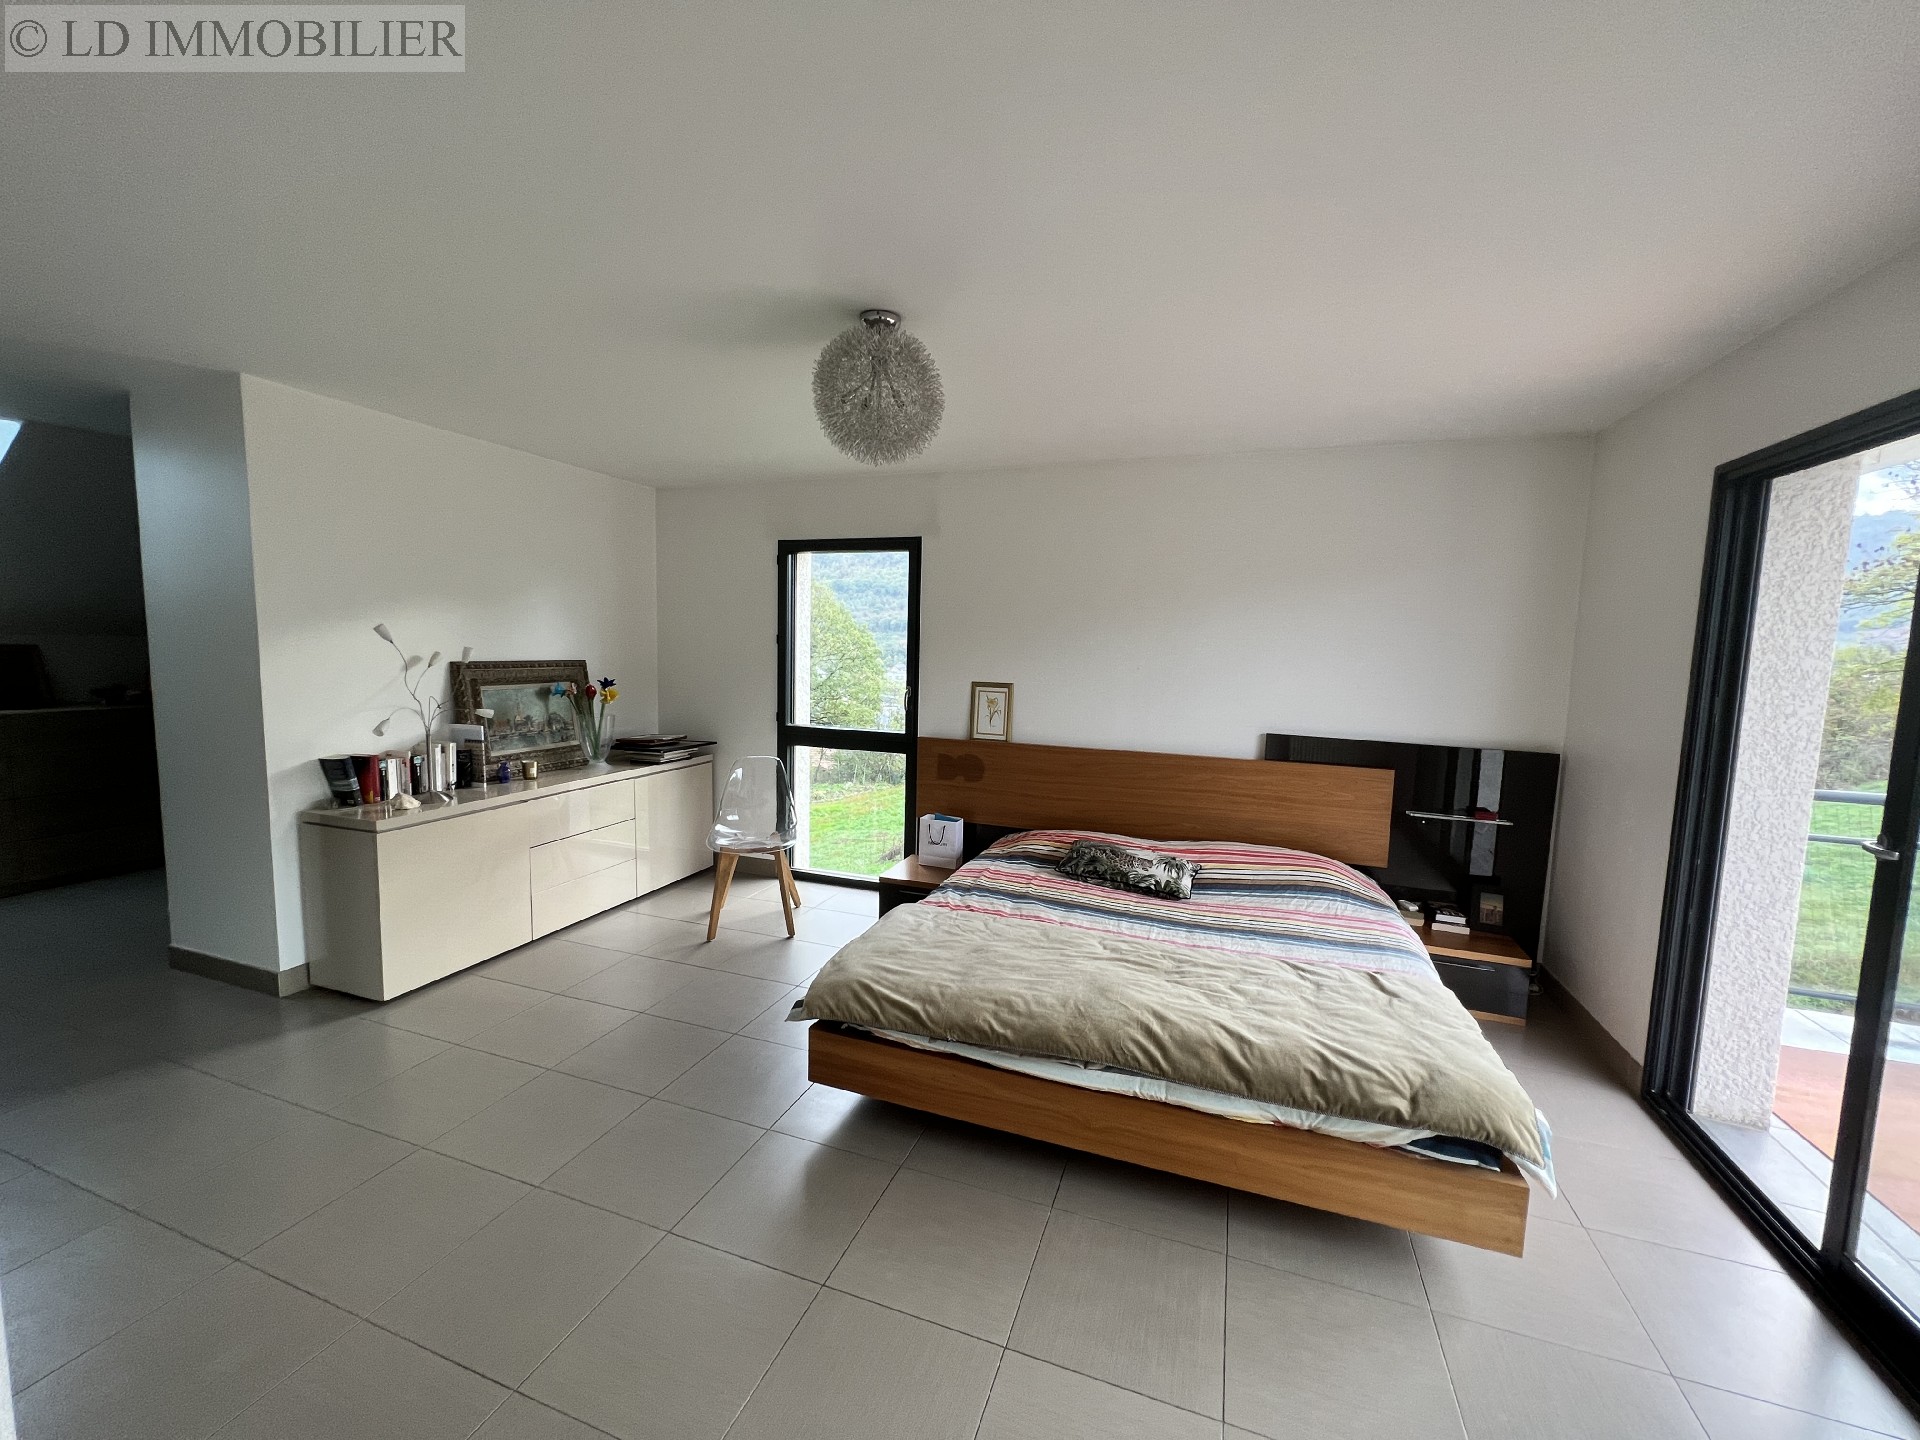 Vente maison  villa - CHALLES LES EAUX 230 m², 6 pièces